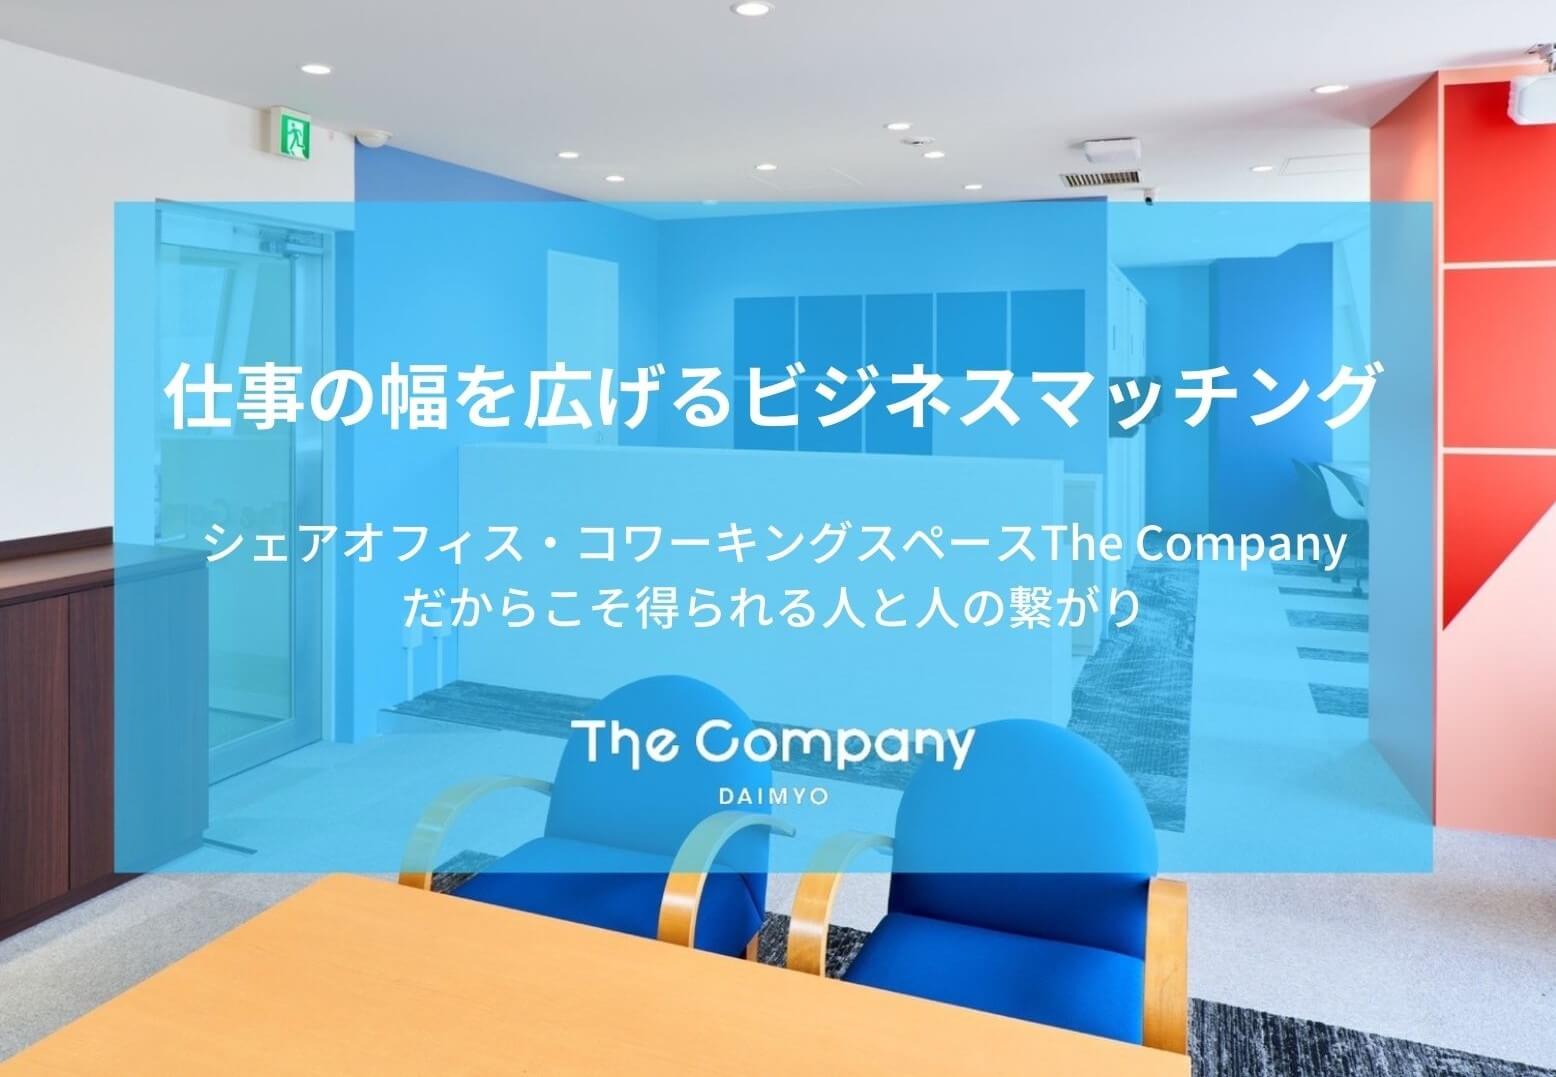 【 福岡シェアオフィス 】The Company DAIMYO(大名)のビジネスマッチング